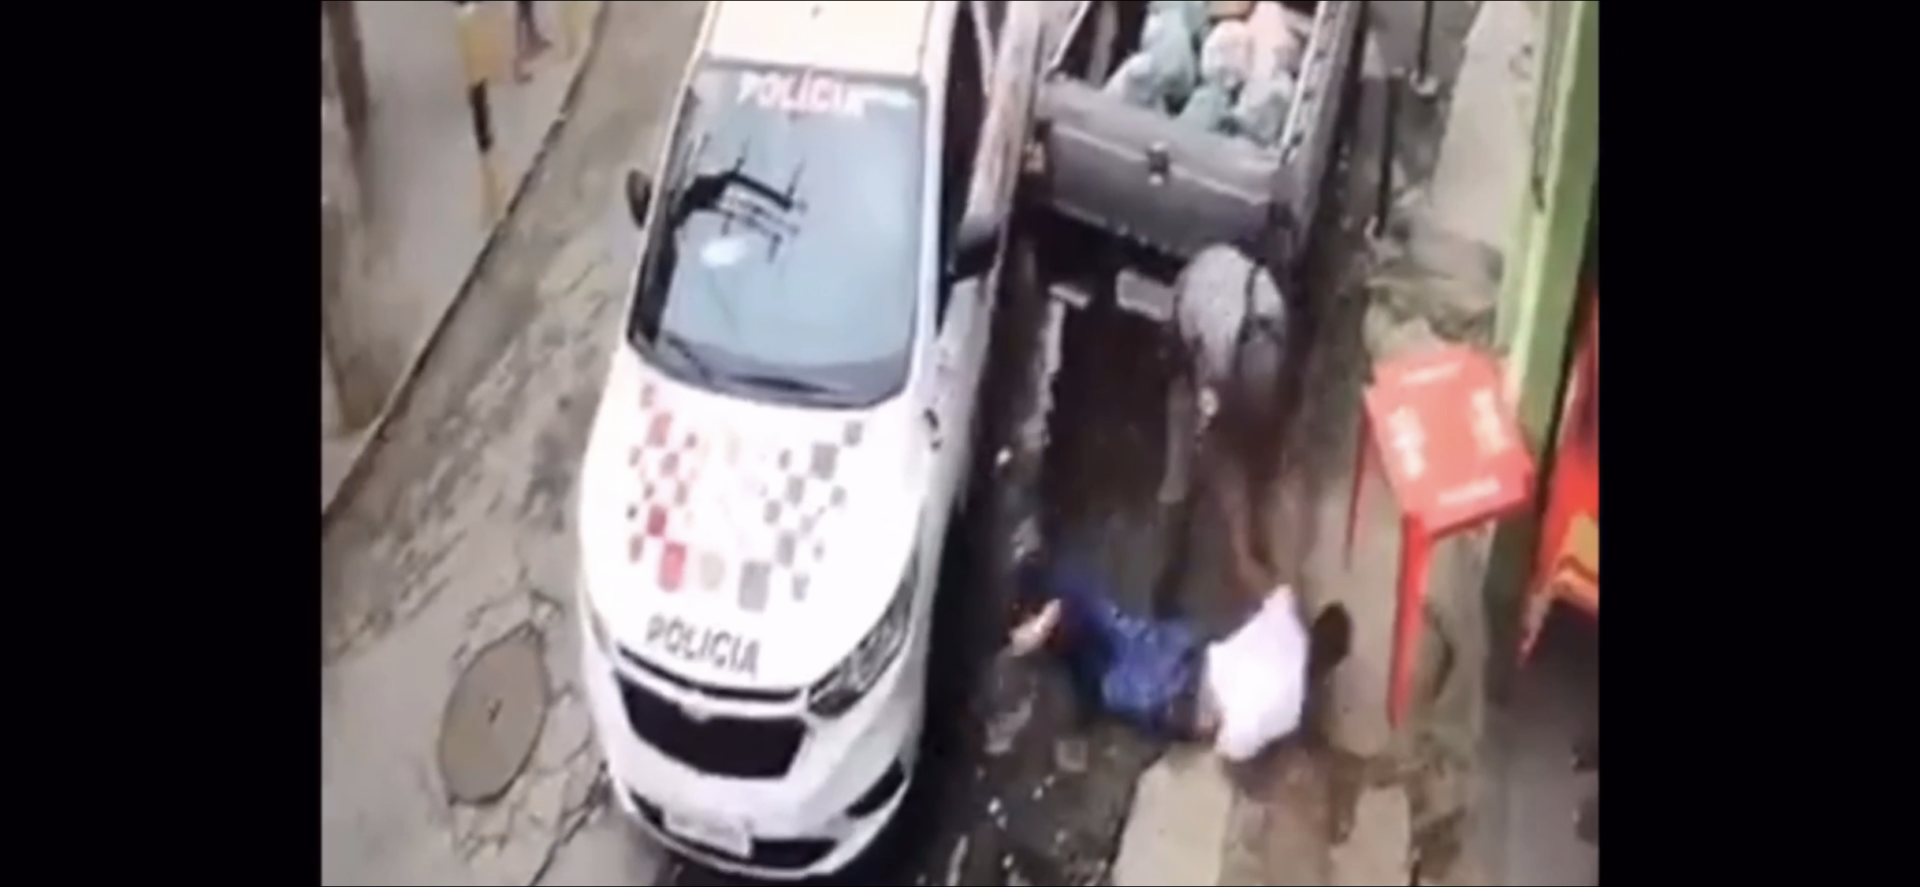 VIDEO: Straatrover bij nek gepakt tijdens achtervolging na snelle manoeuvre politie